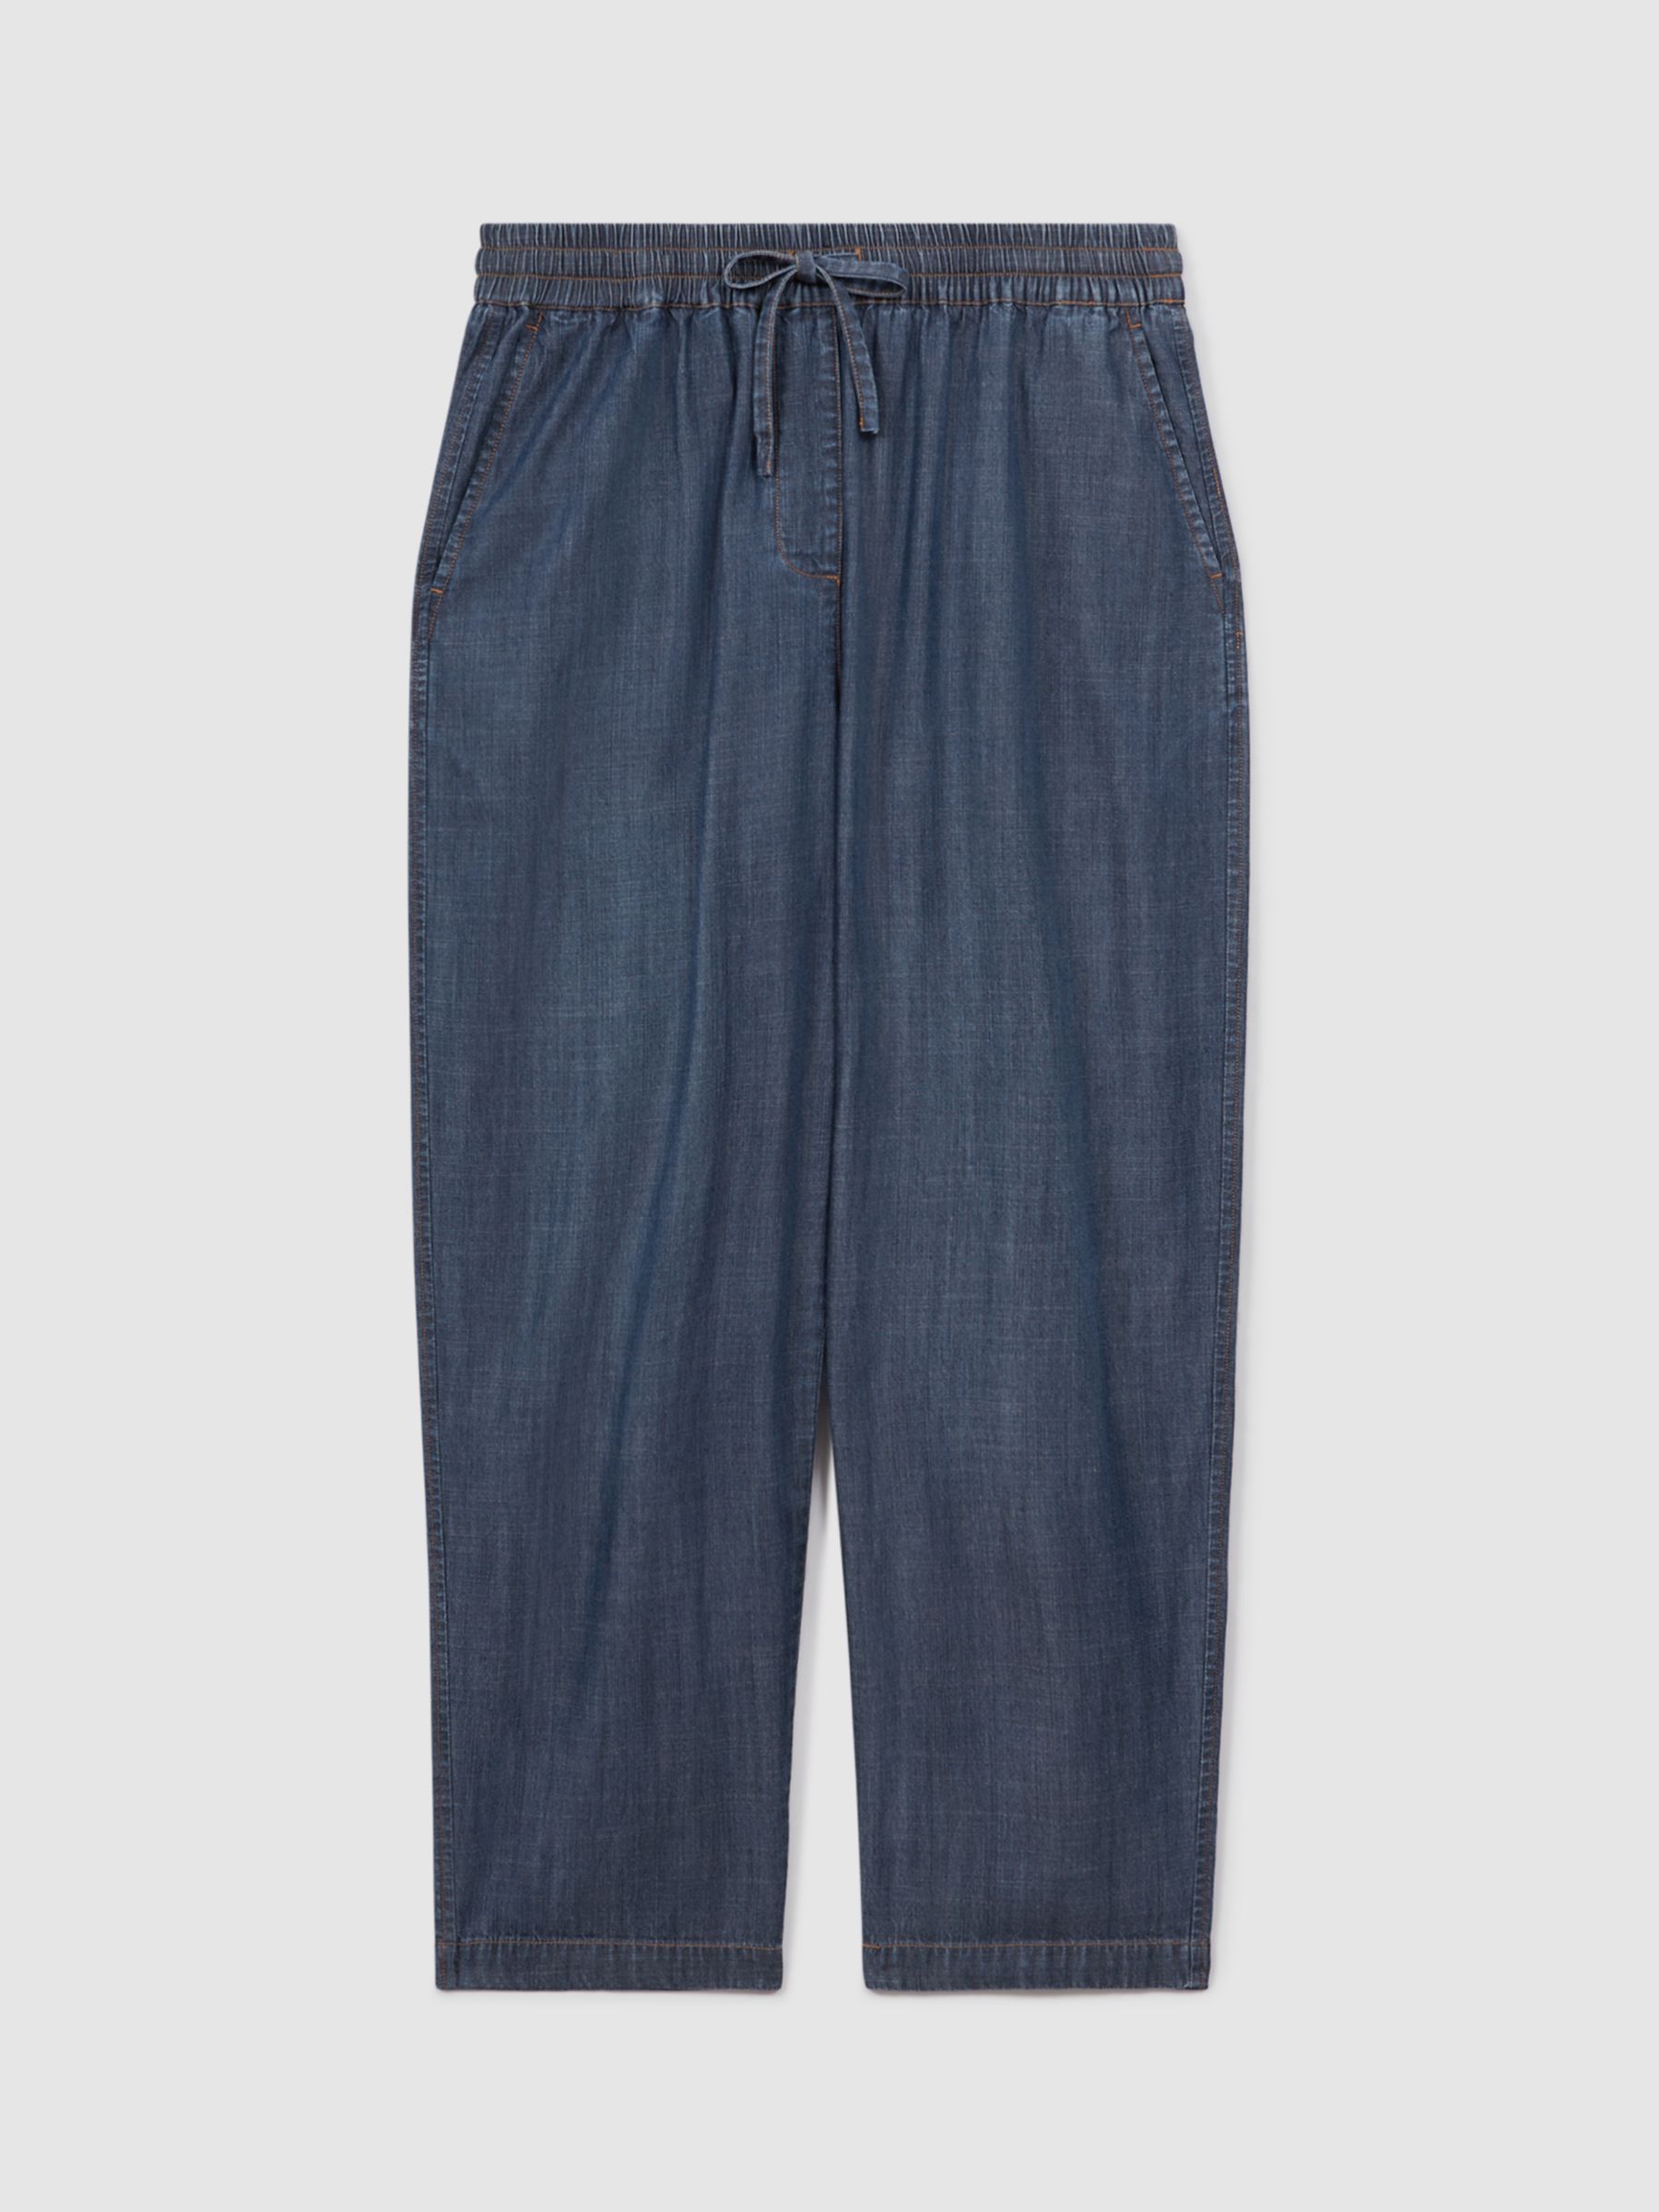 Reiss Carter Denim Drawstring Waist Trousers, Mid Blue, 8